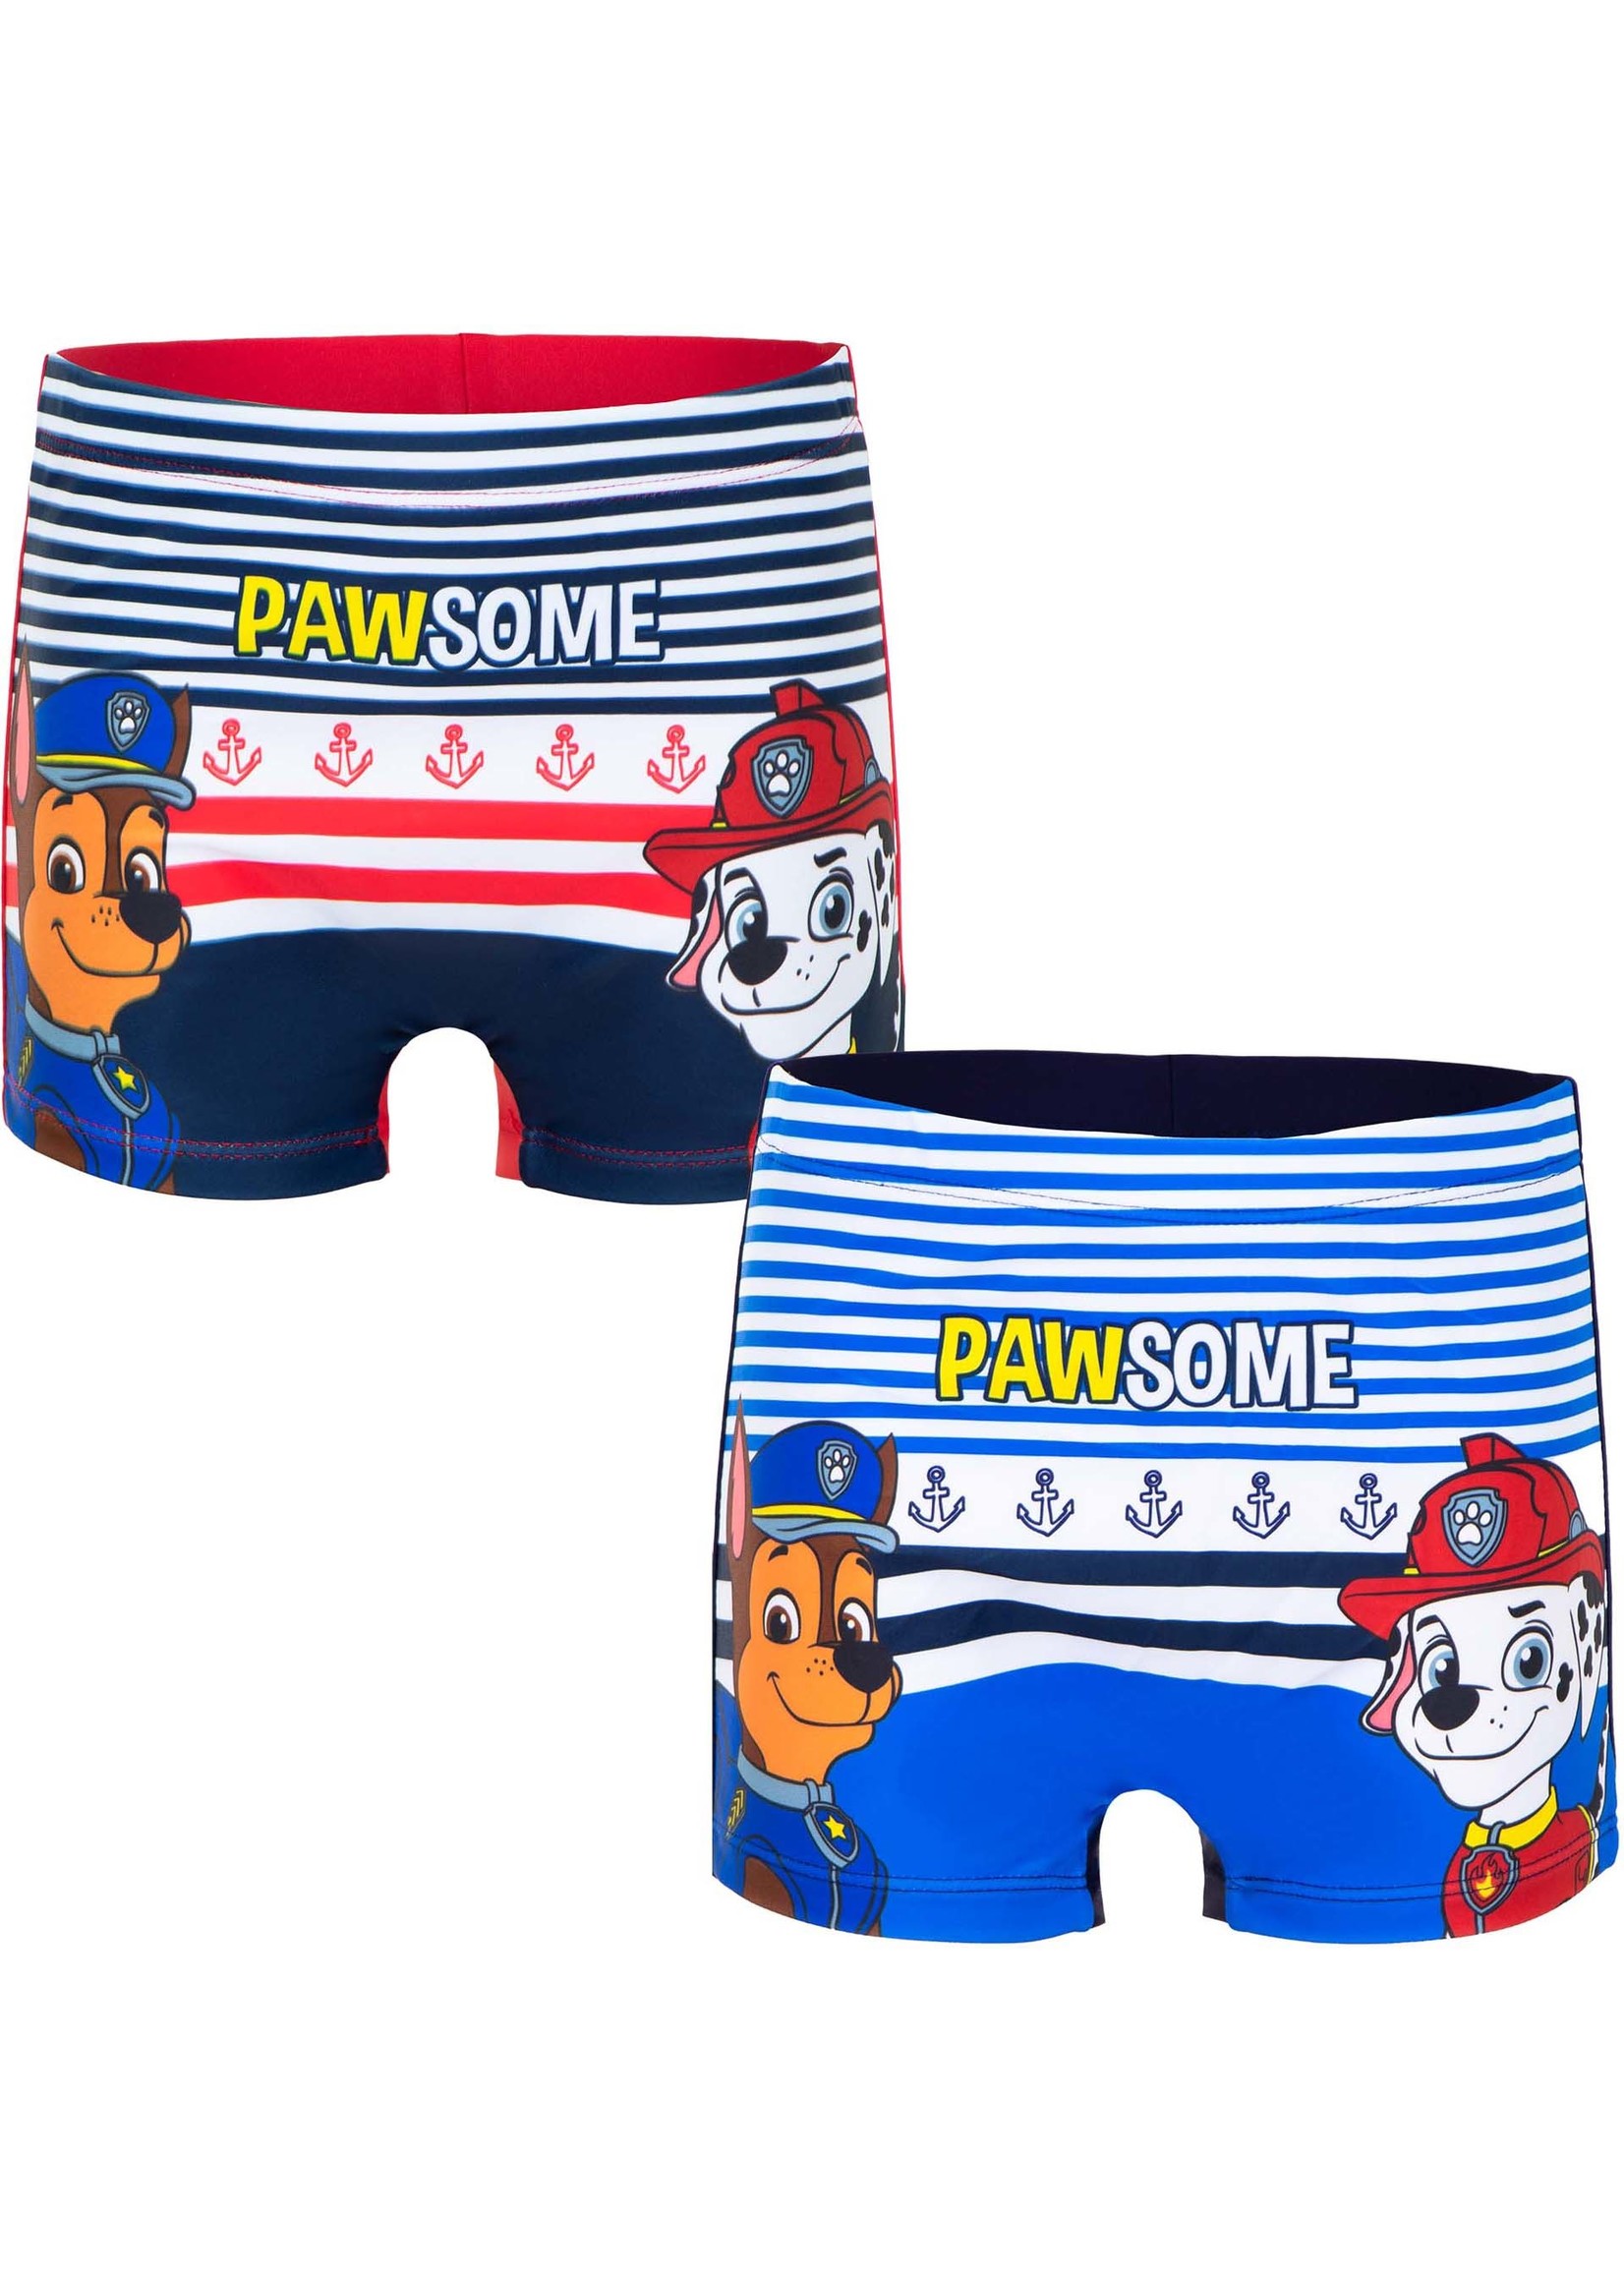 Nickelodeon Paw Patrol swim shorts from Nickelodeon blue